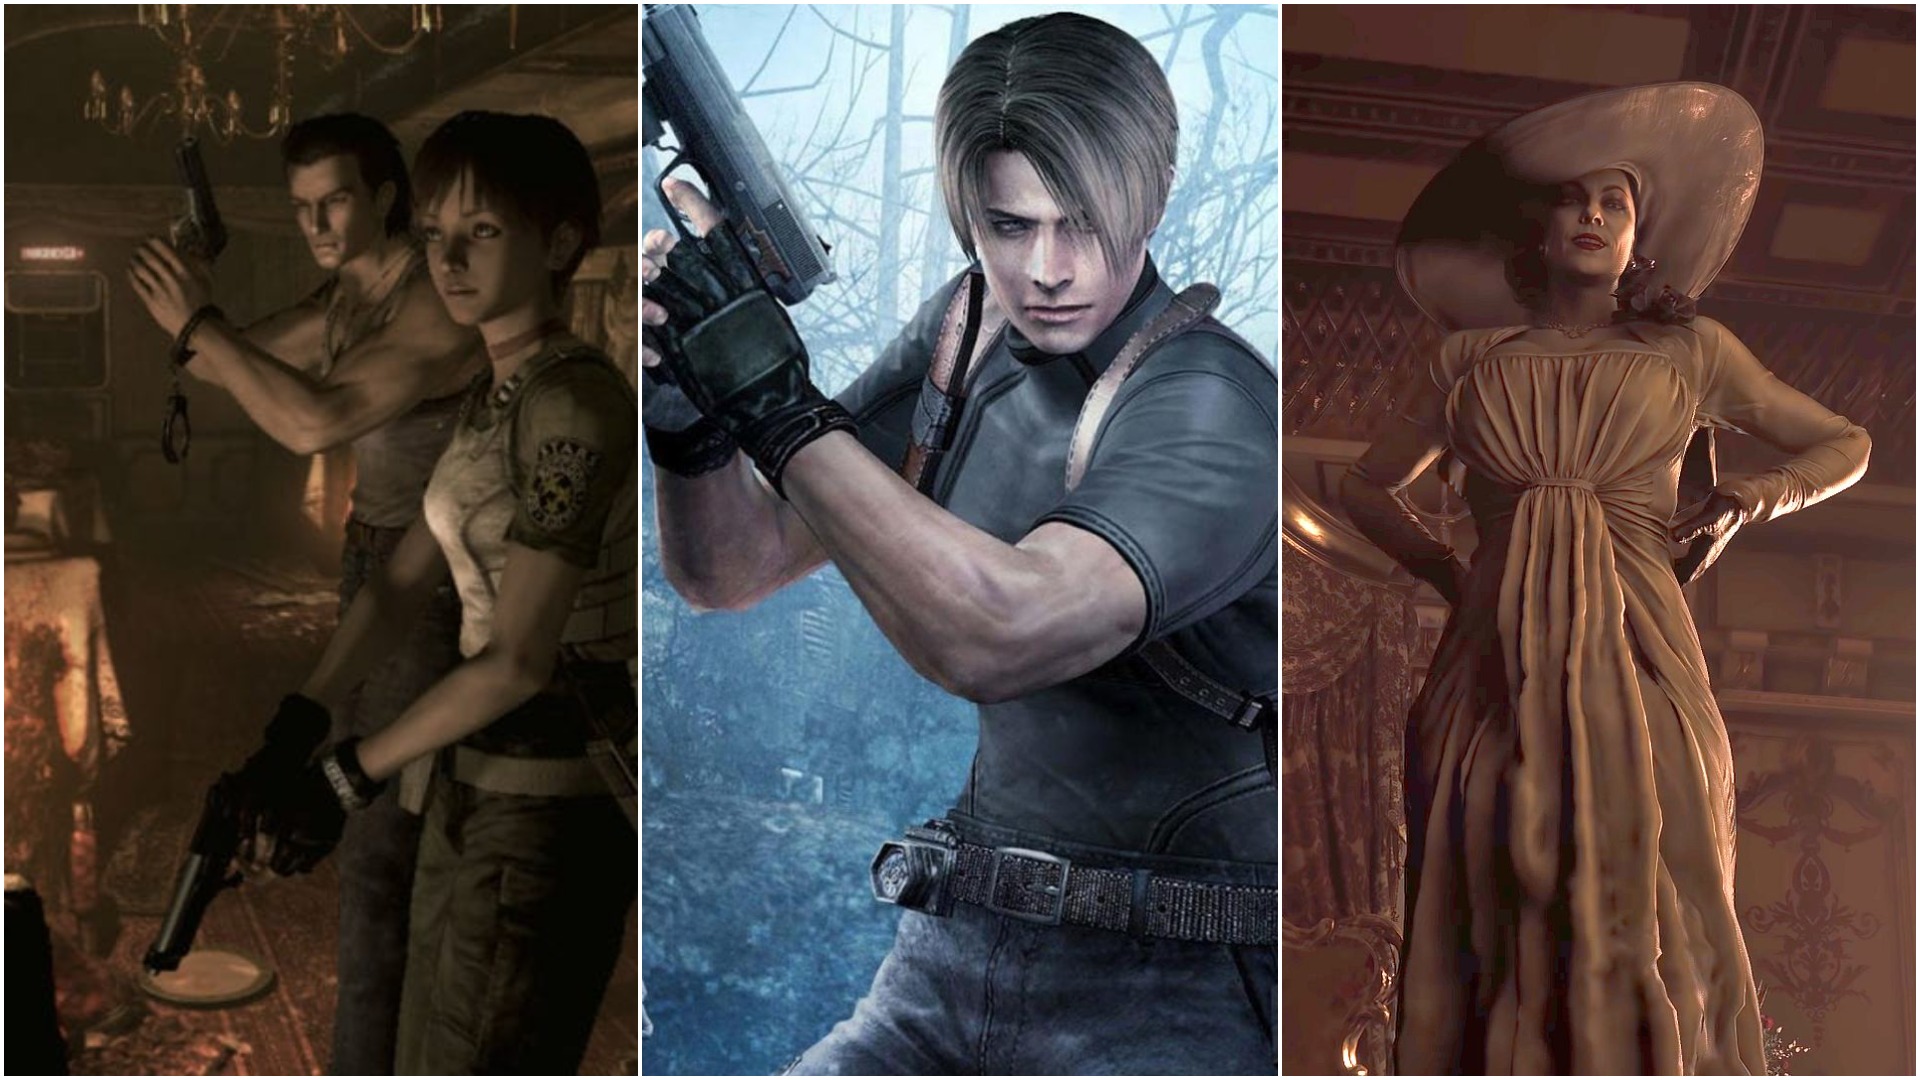 Resident Evil Timeline in Chronological Order